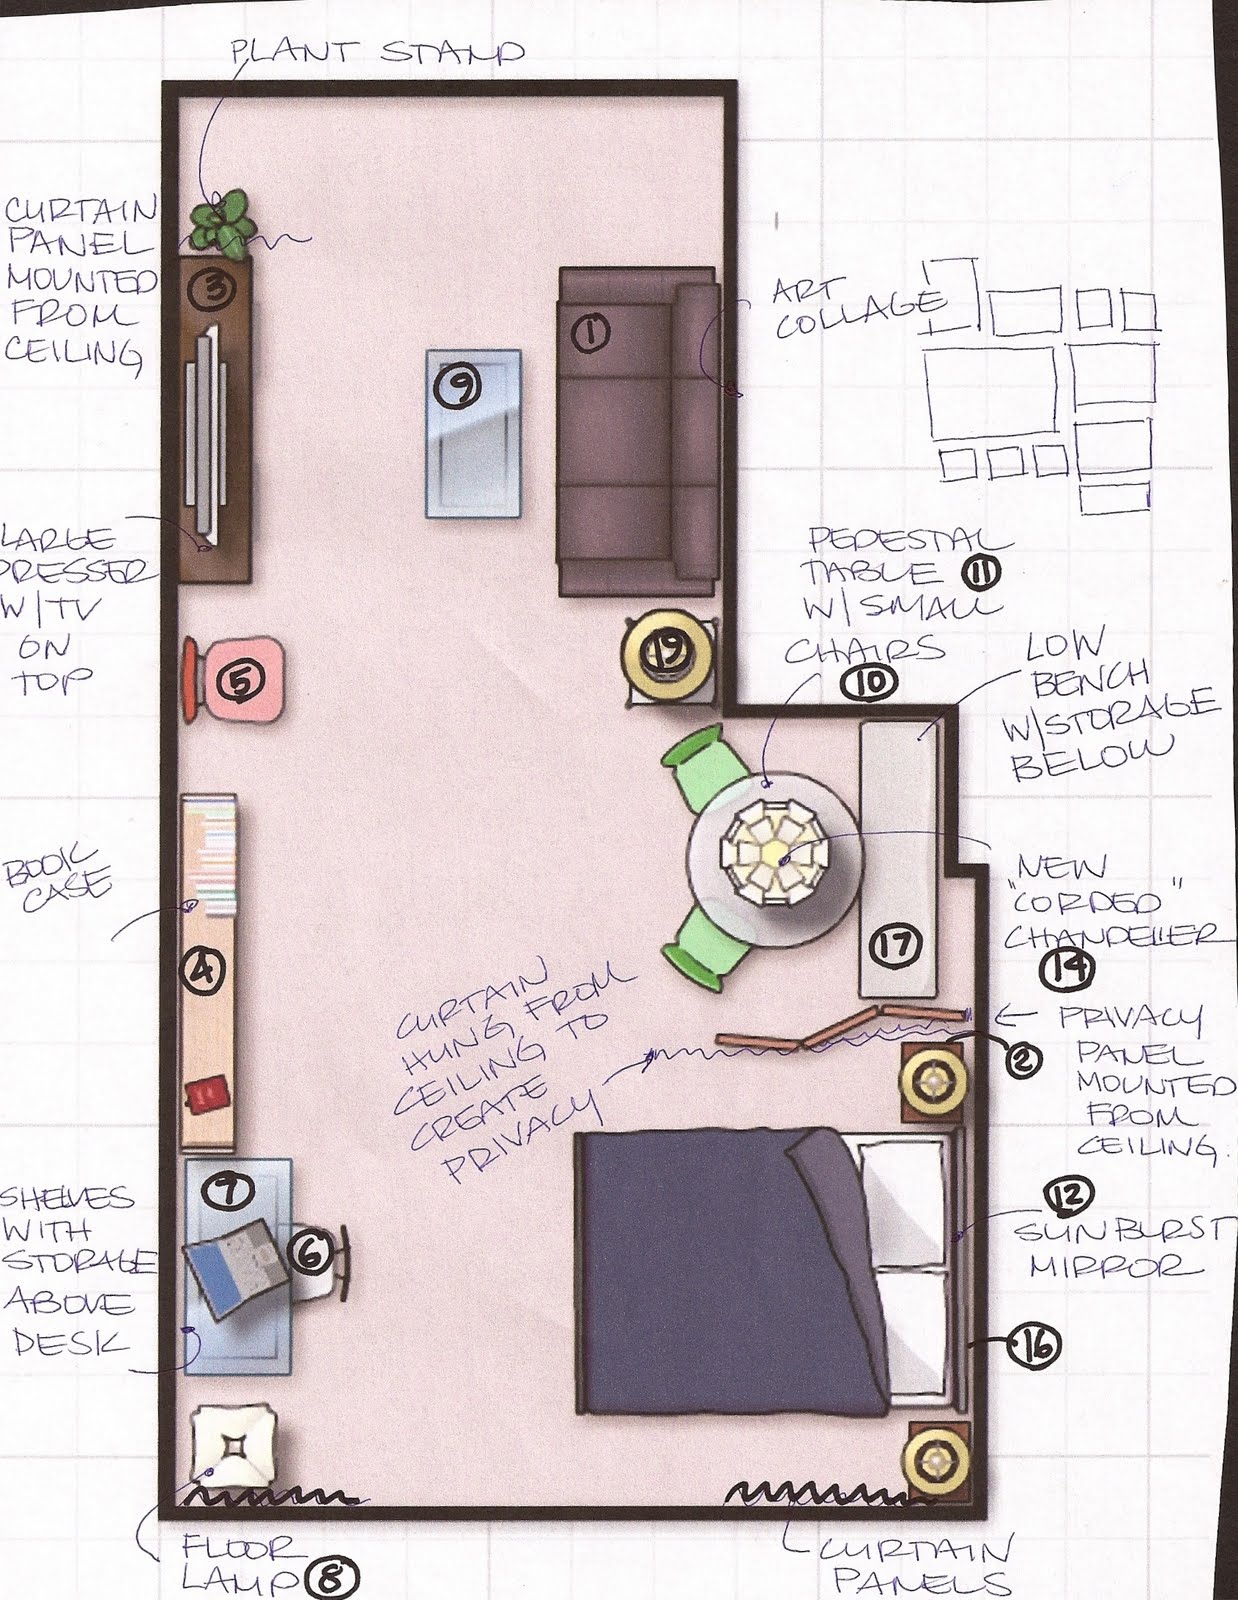 Studio Apartment Floor Plans